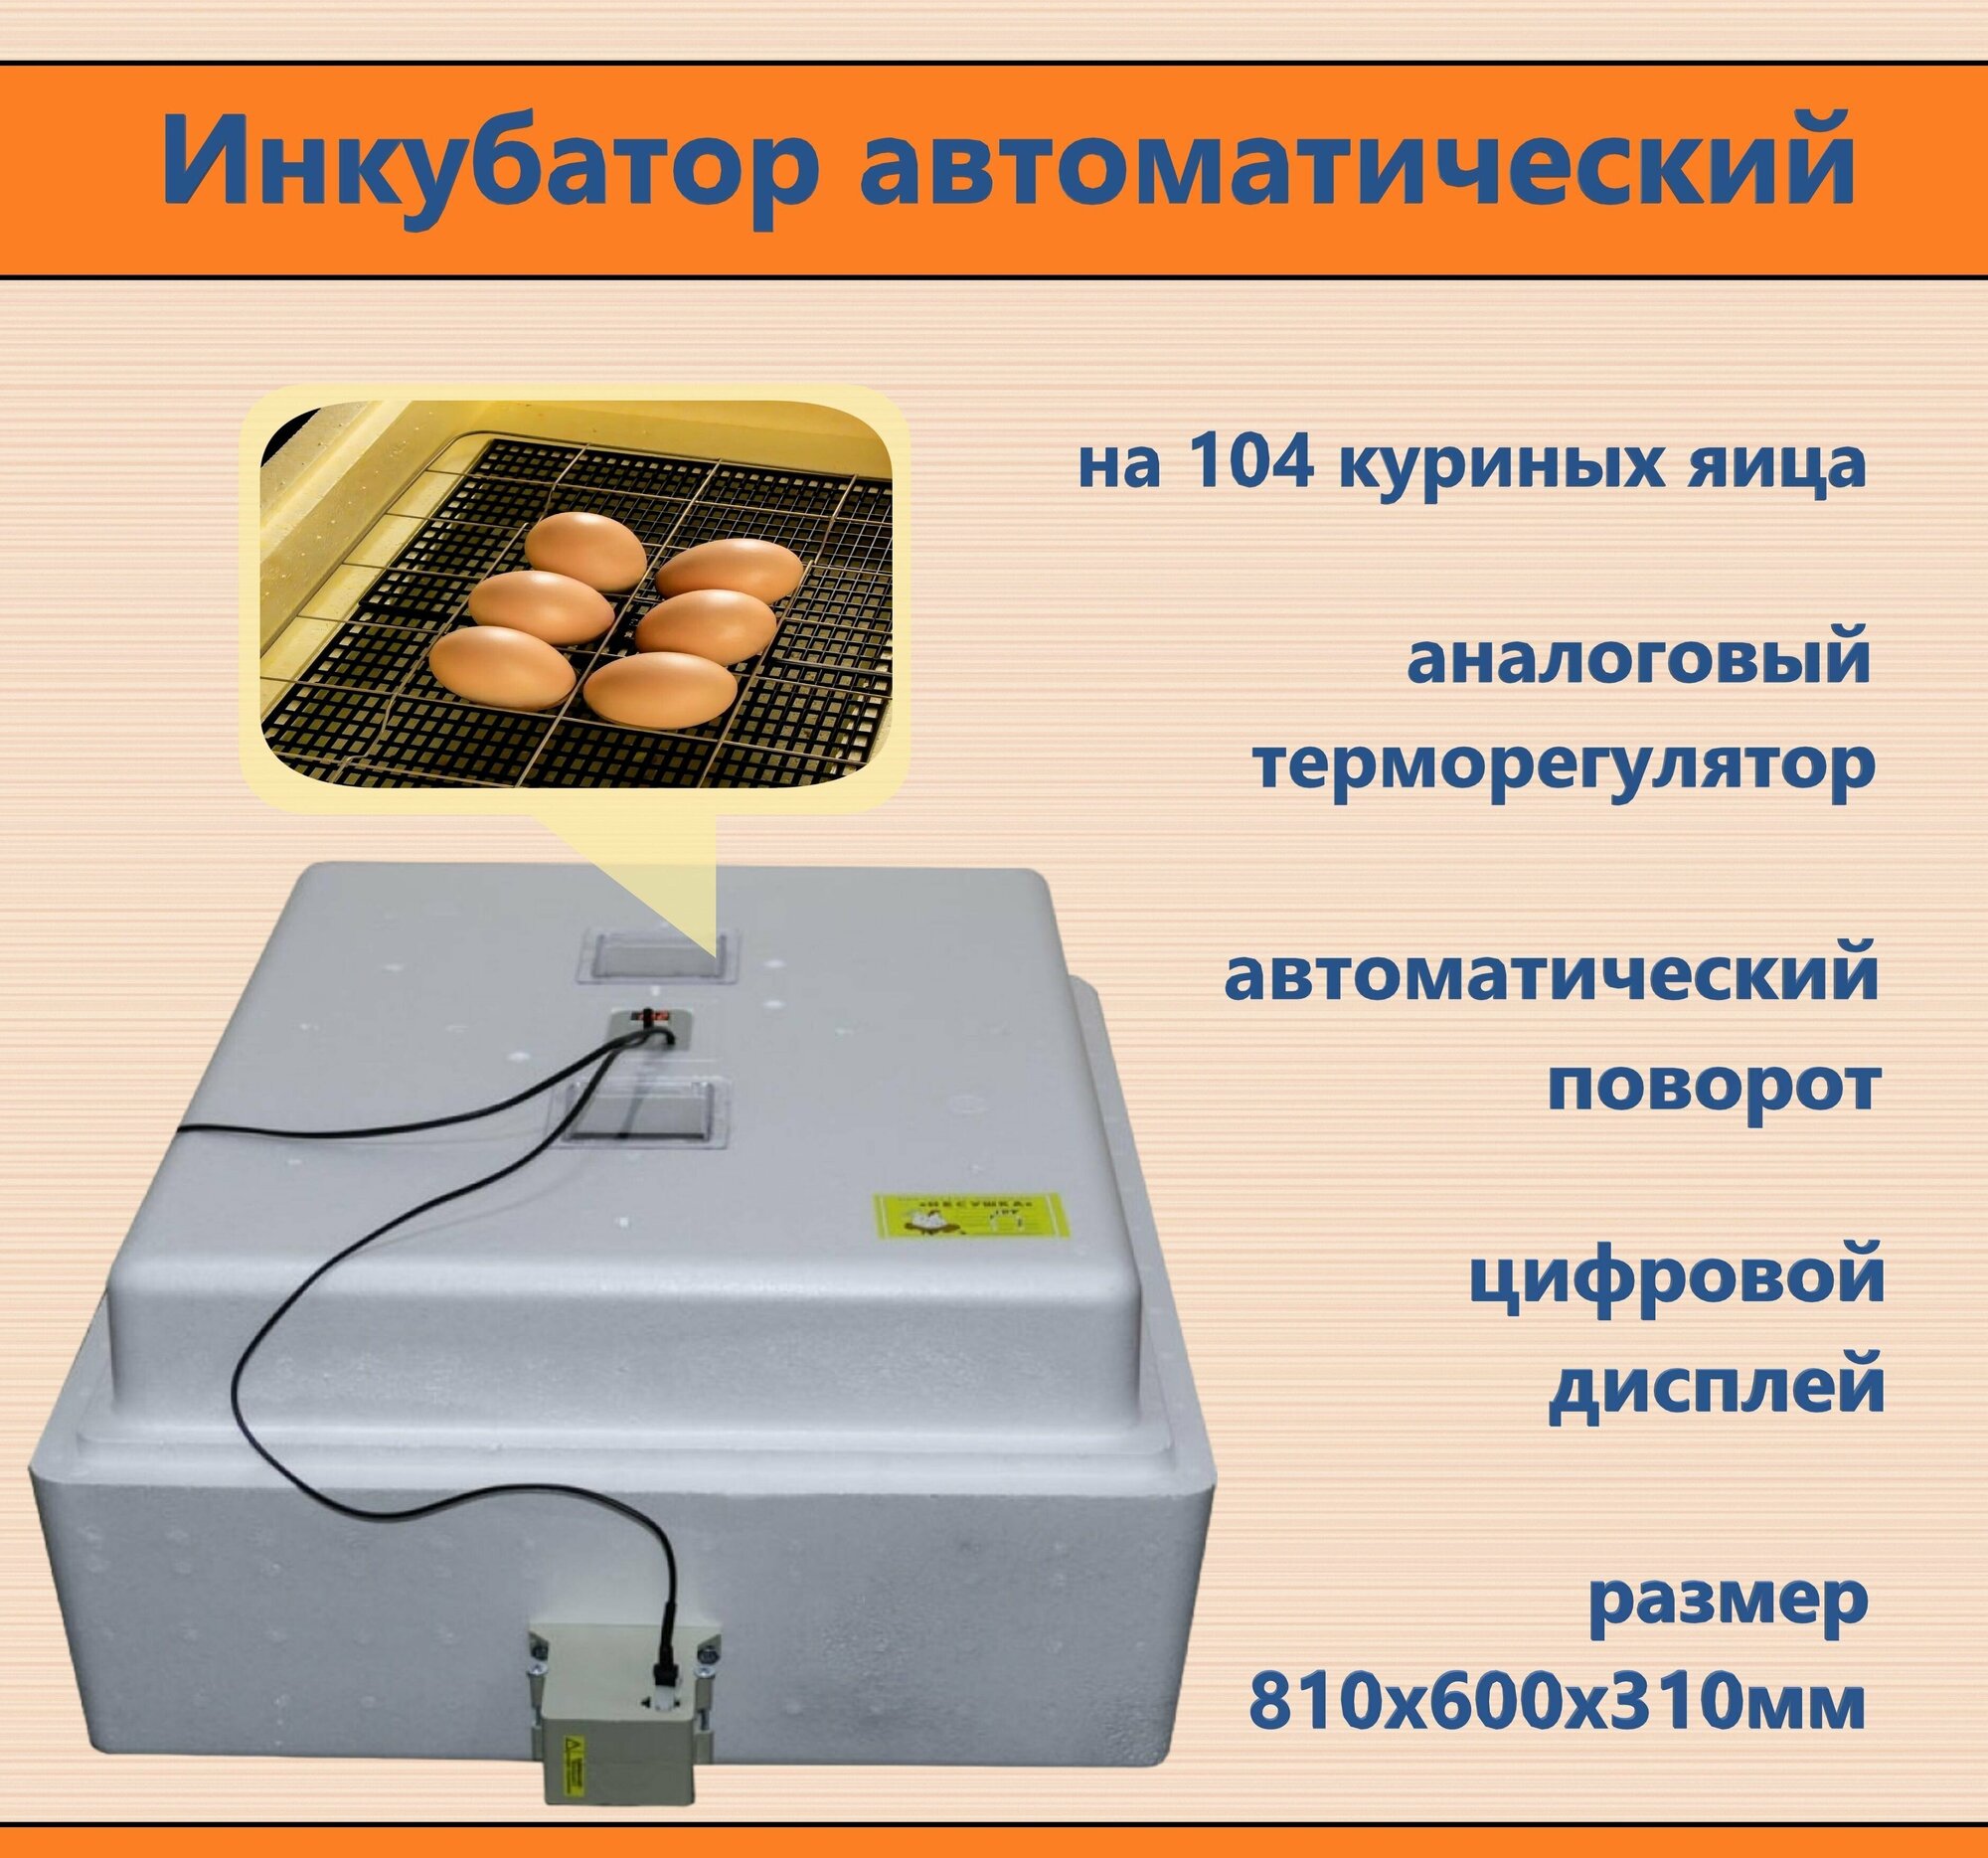 Инкубатор автоматический на 104 яйца, 220 В - автоматический поворот, аналоговый терморегулятор. Оптимальный вариант для владельцев частных хозяйств, фермеров, птицеводов-любителей